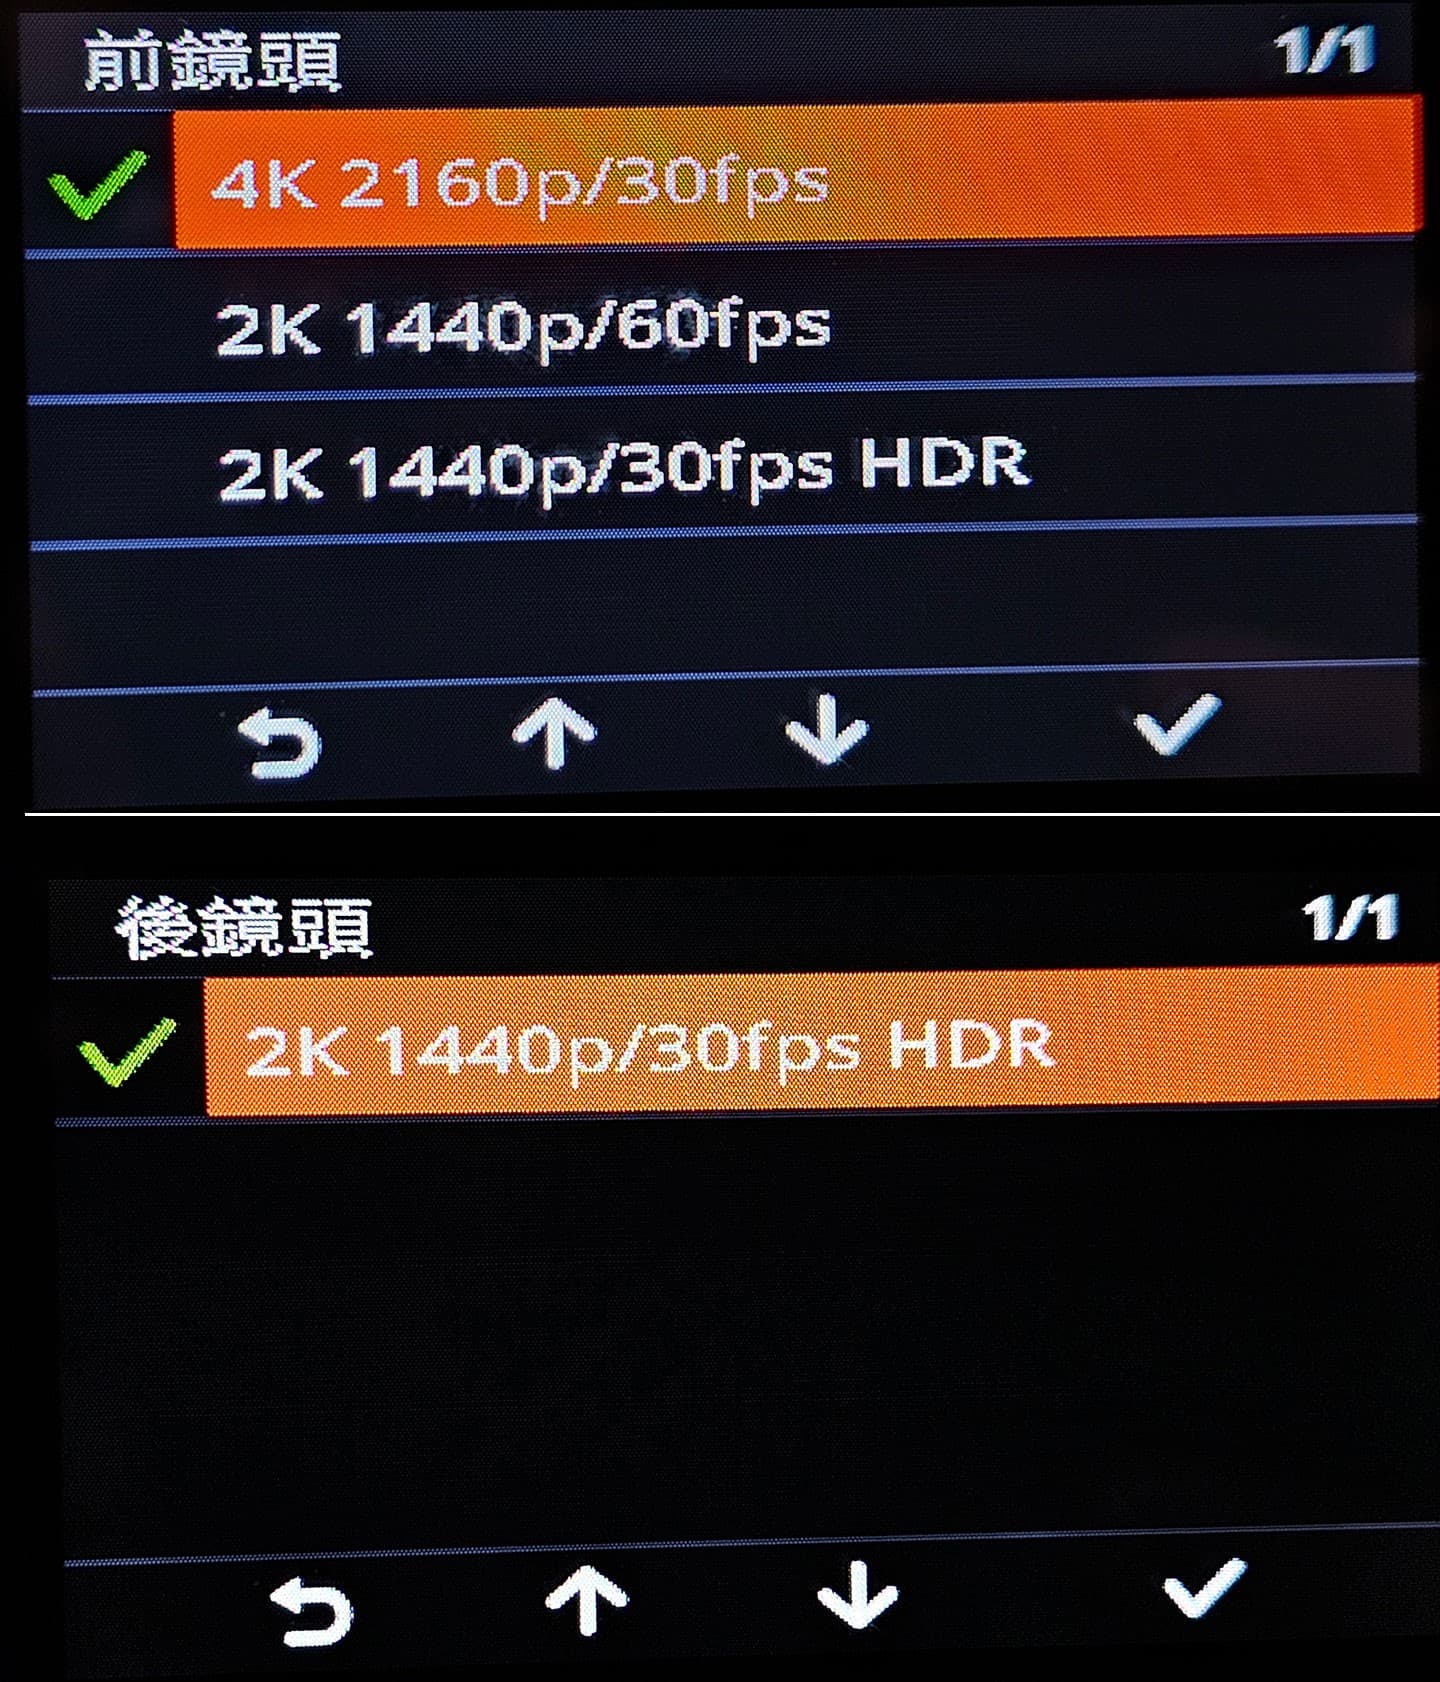 前鏡有 4K 一個檔位和 2K 兩個檔位可以切換，後鏡則僅固定提供 2K 30fps HDR 錄製模式。